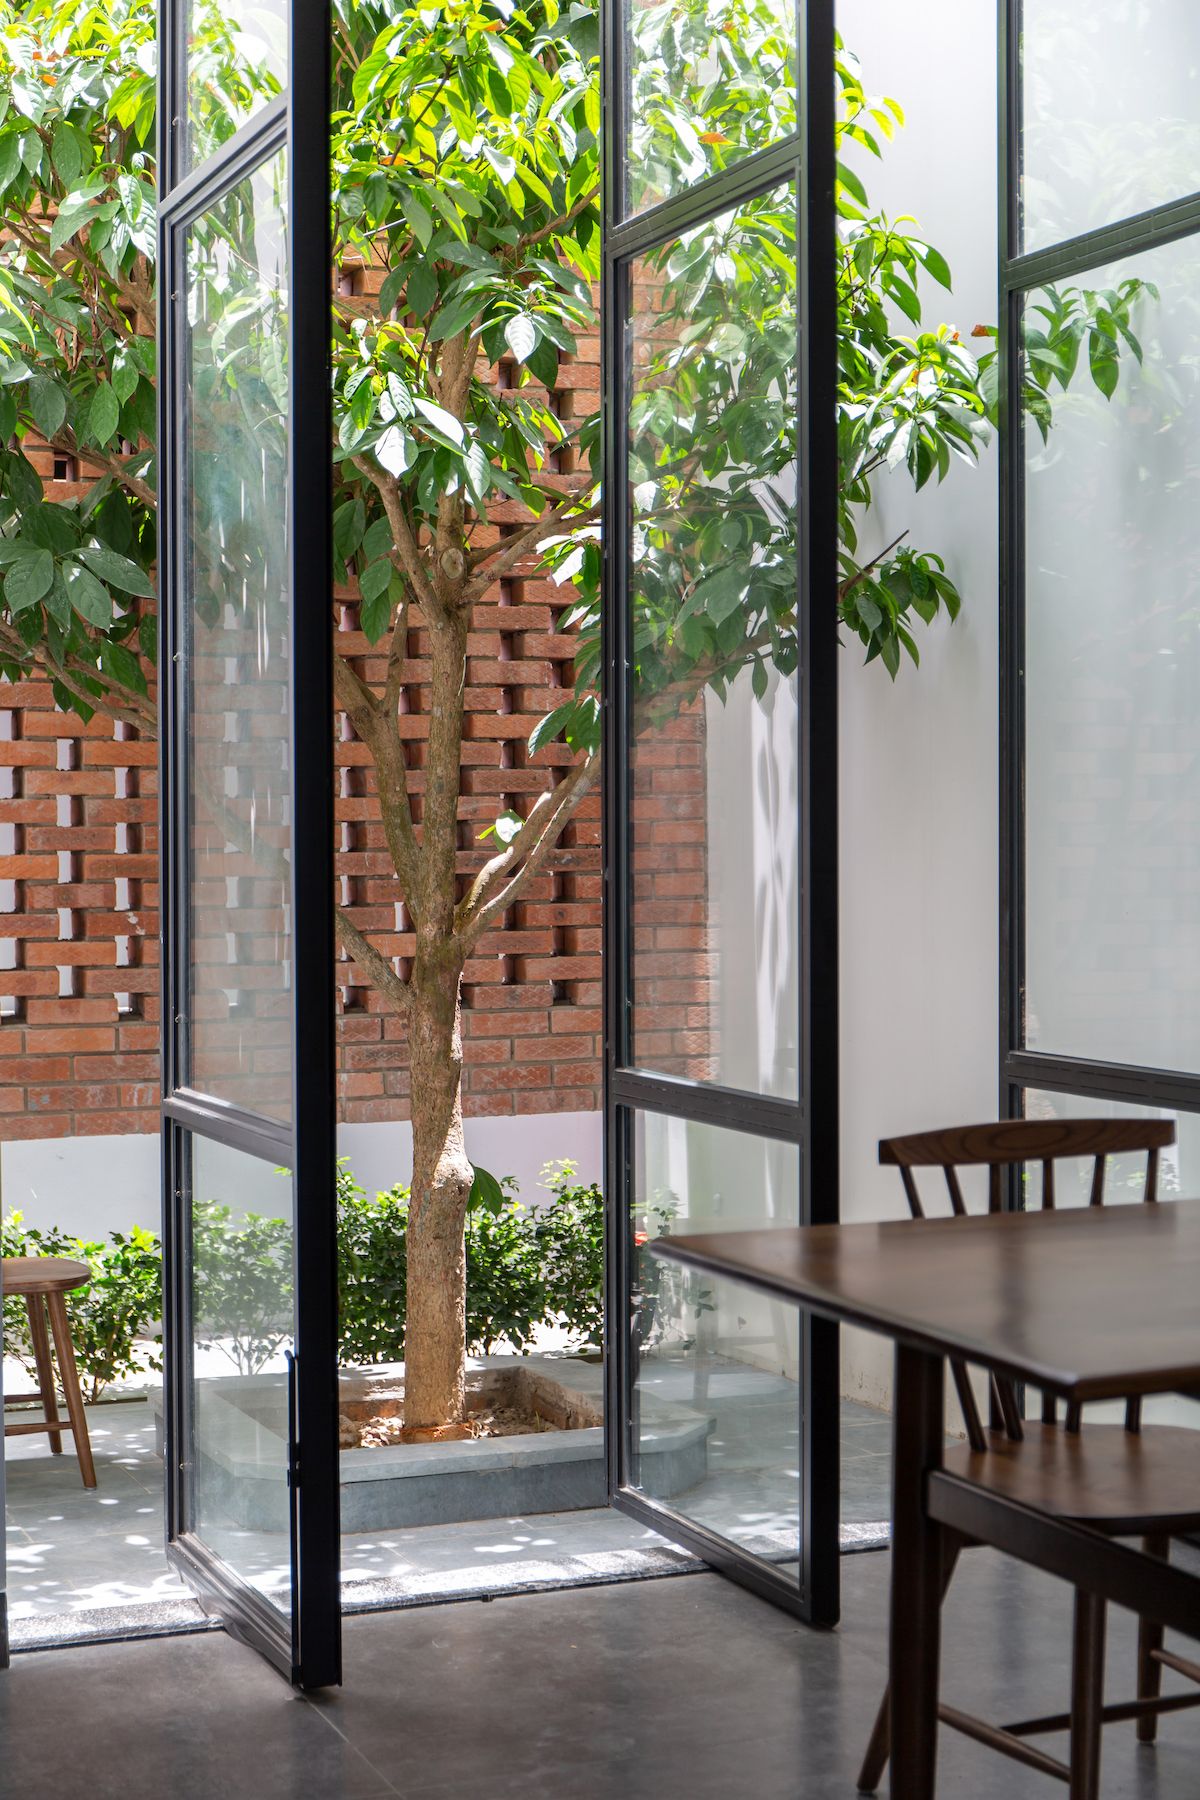 Coong House - "Hô biến" ngôi nhà cũ kỹ thành không gian sống đầy năng lượng | Dom architect Studio